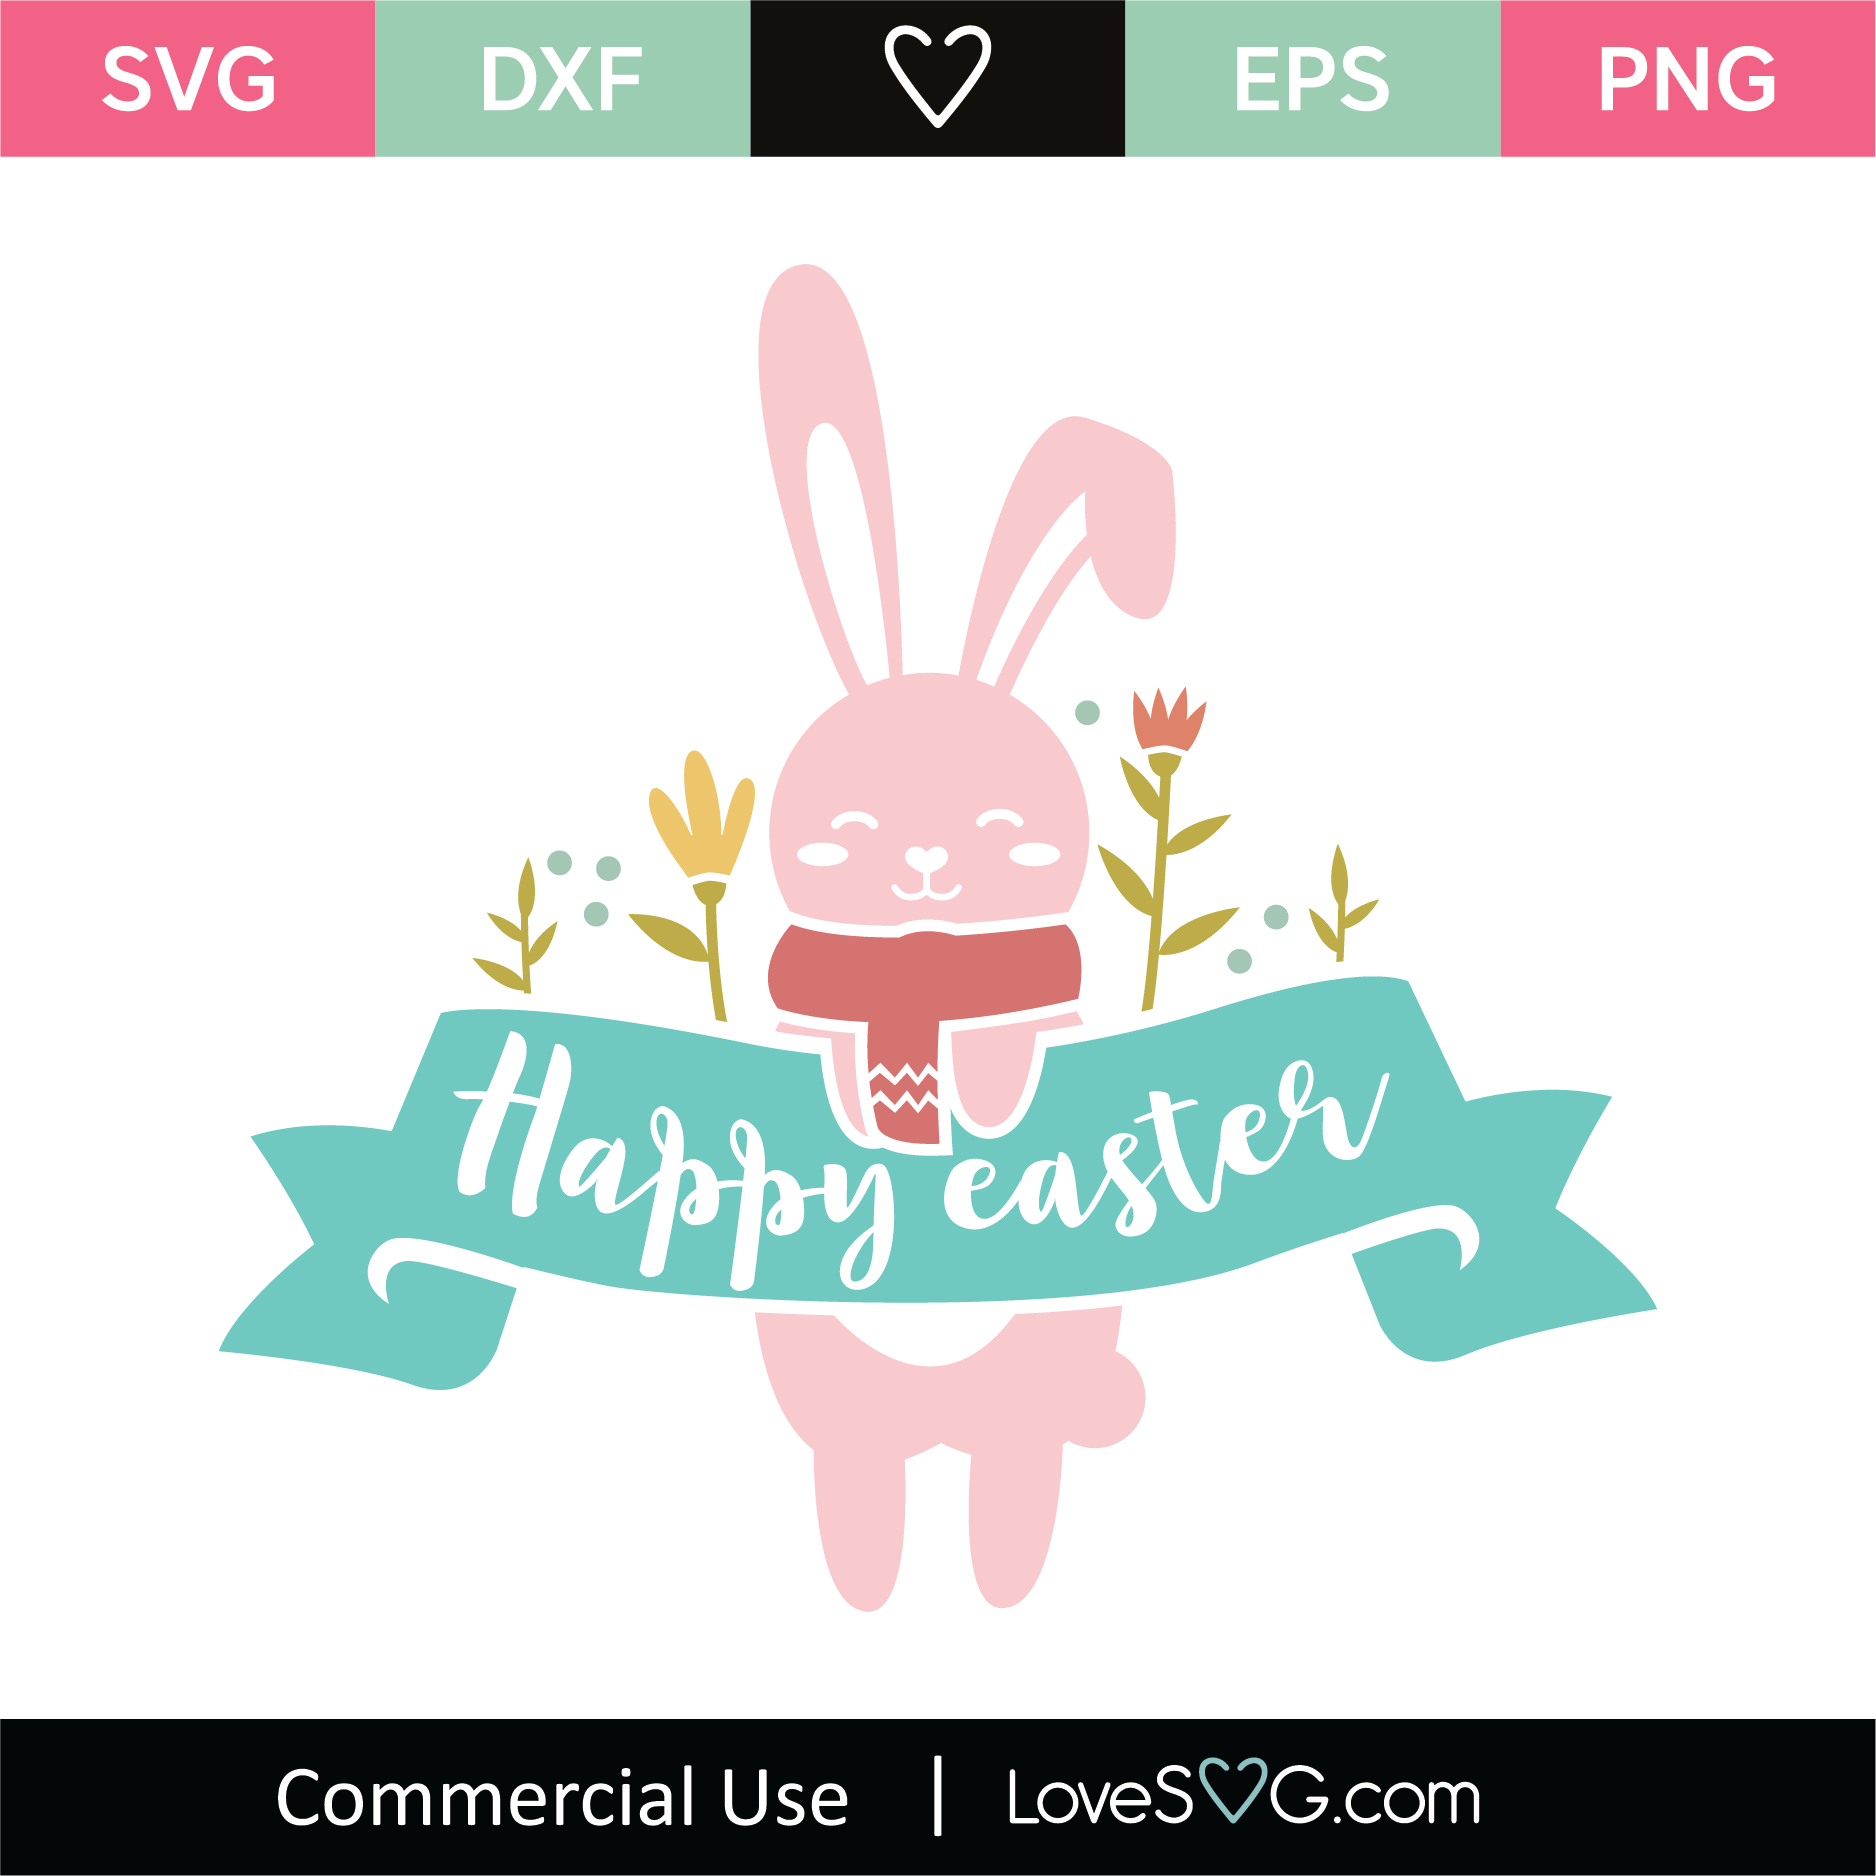 Happy Easter Banner SVG Cut File - Lovesvg.com